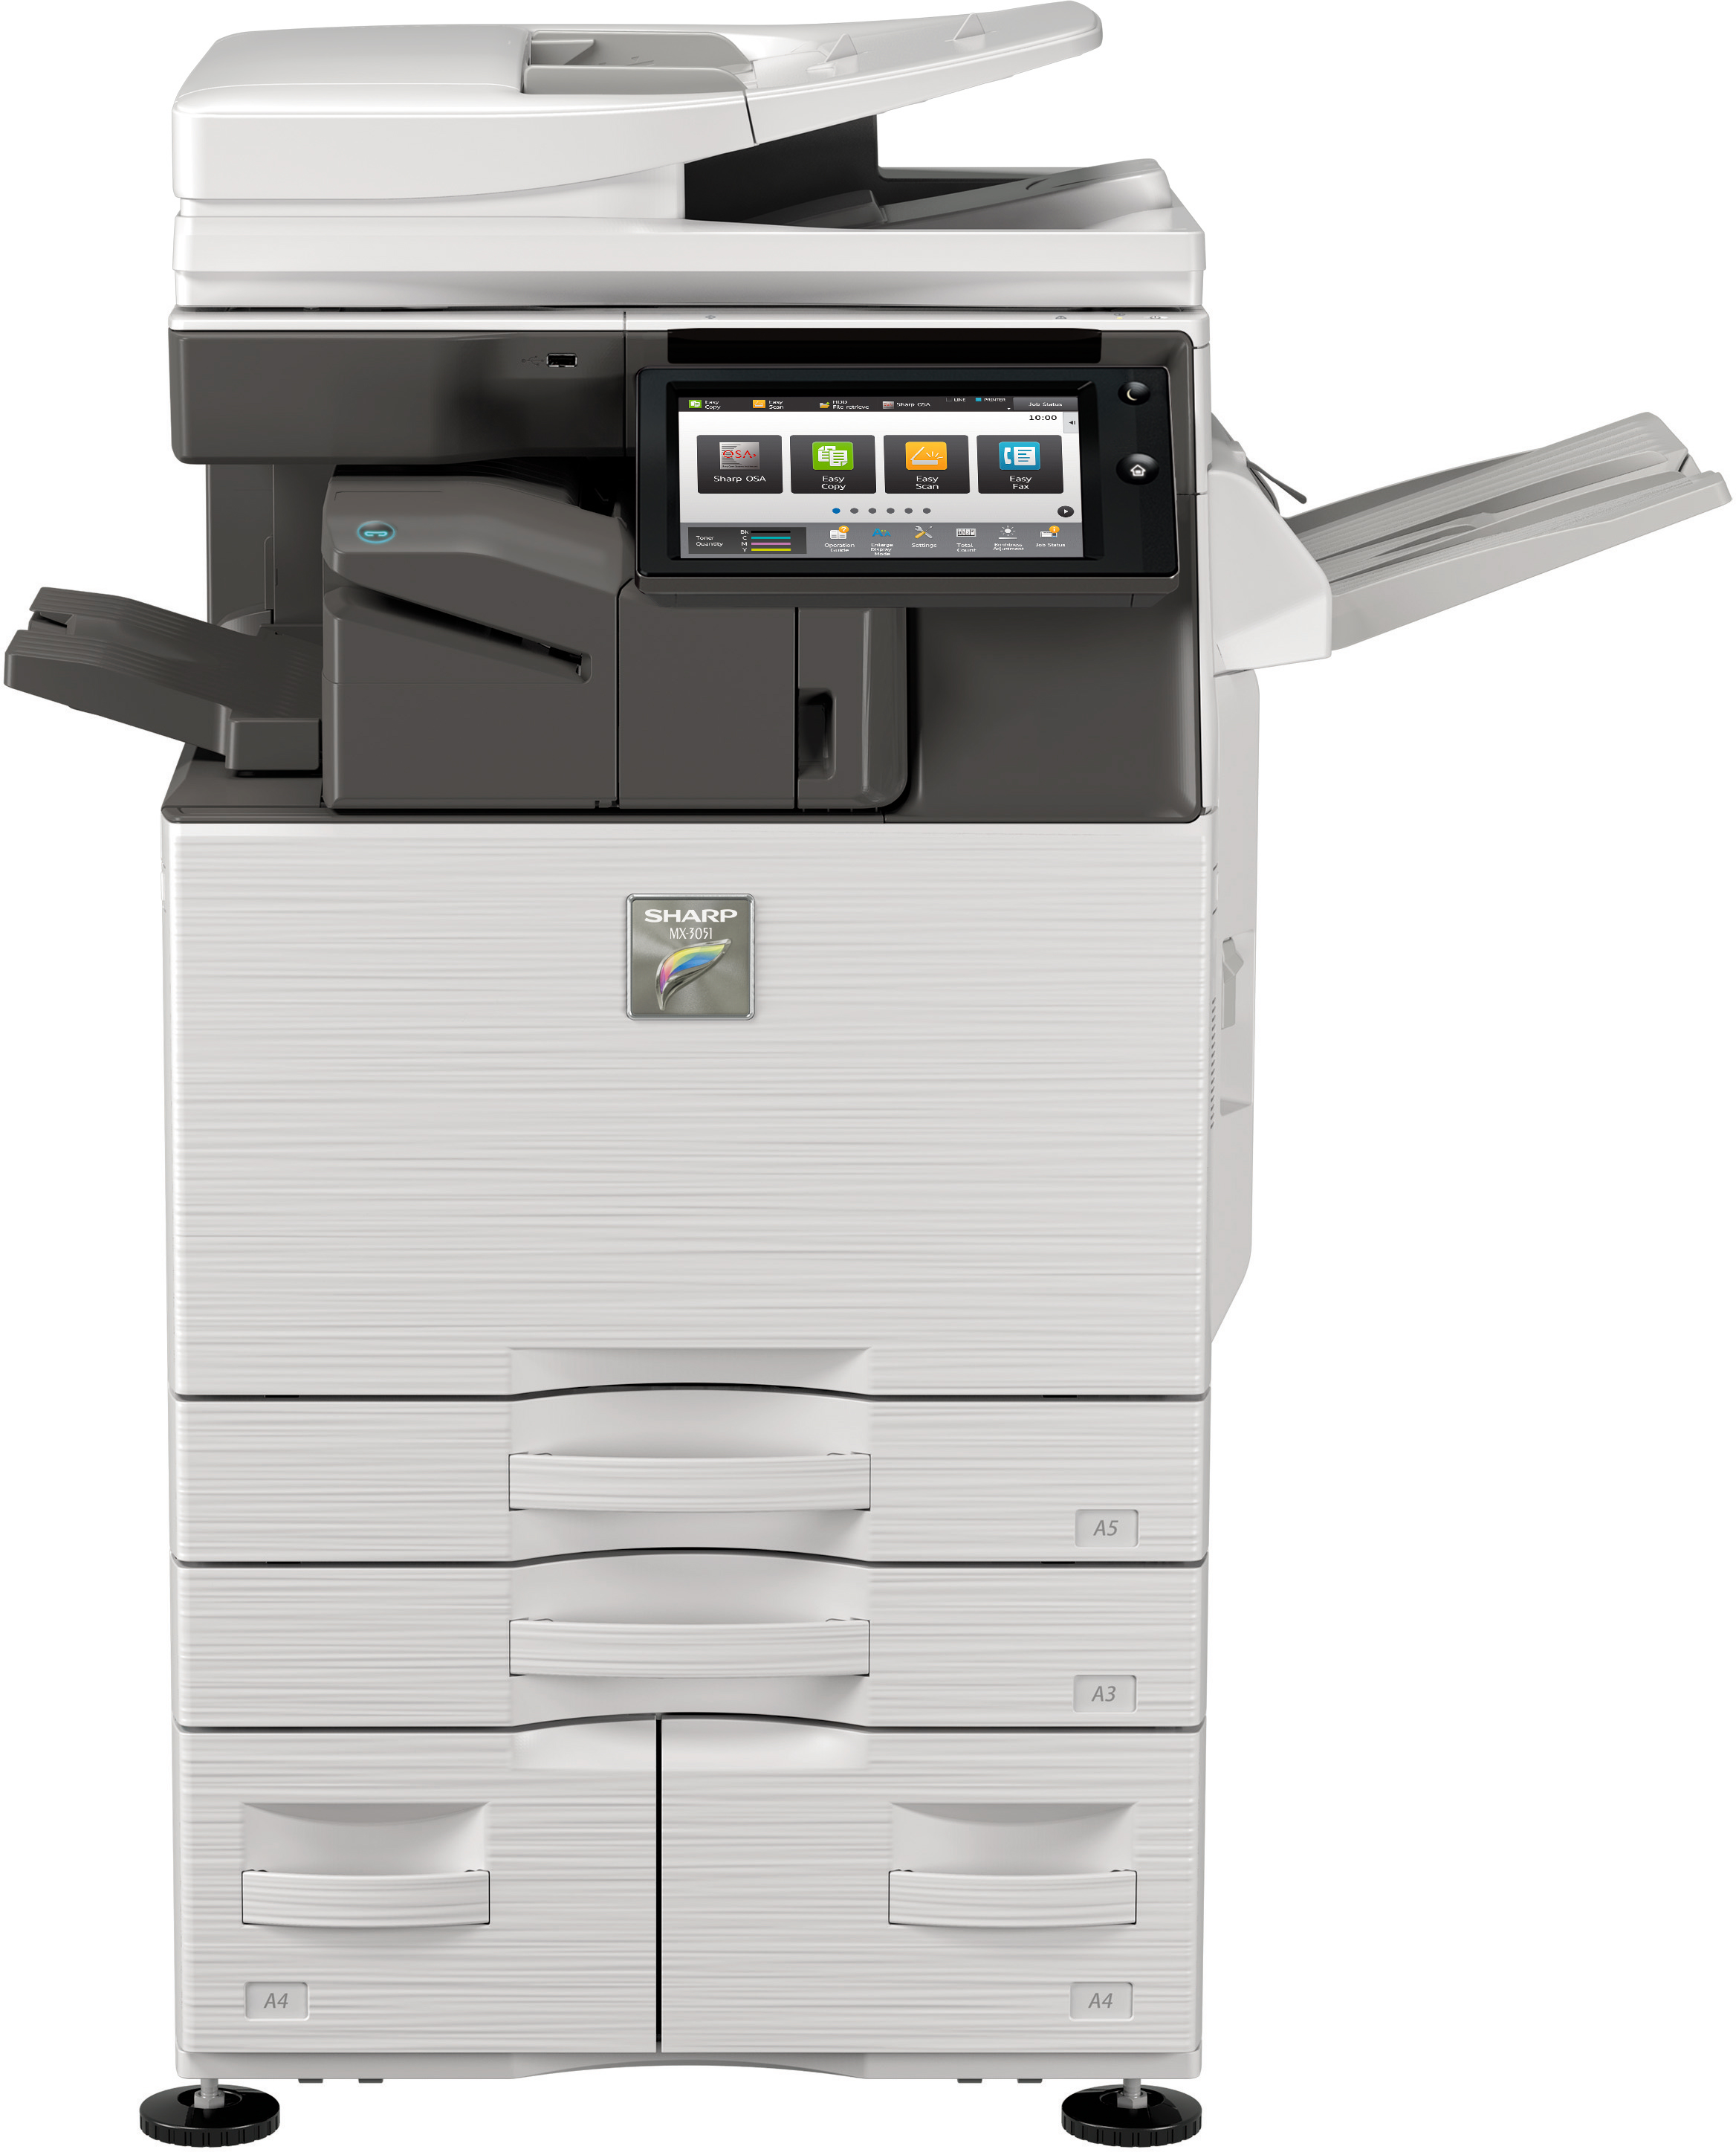 Multifunction Printers in La Crosse